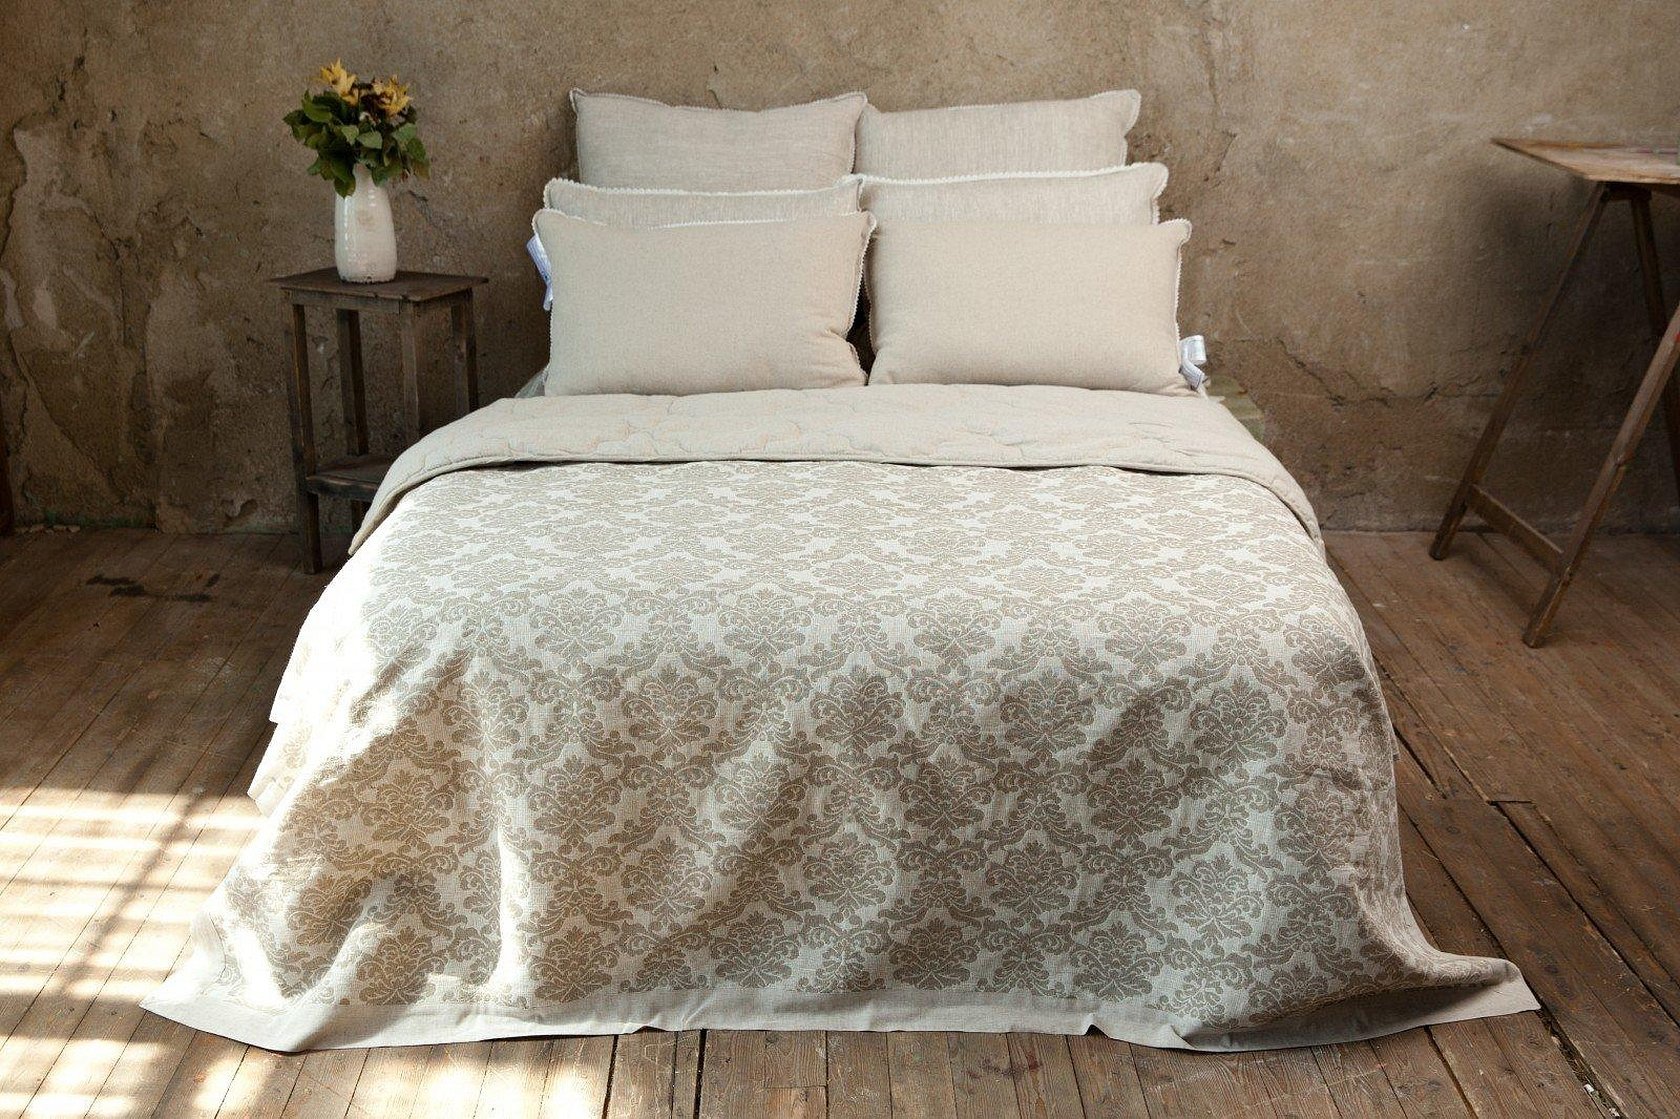 Одеяло хлопок лен. Одеяло дивный лен. Одеяло экостиль лен хлопок. Покрывало из льна на кровать.